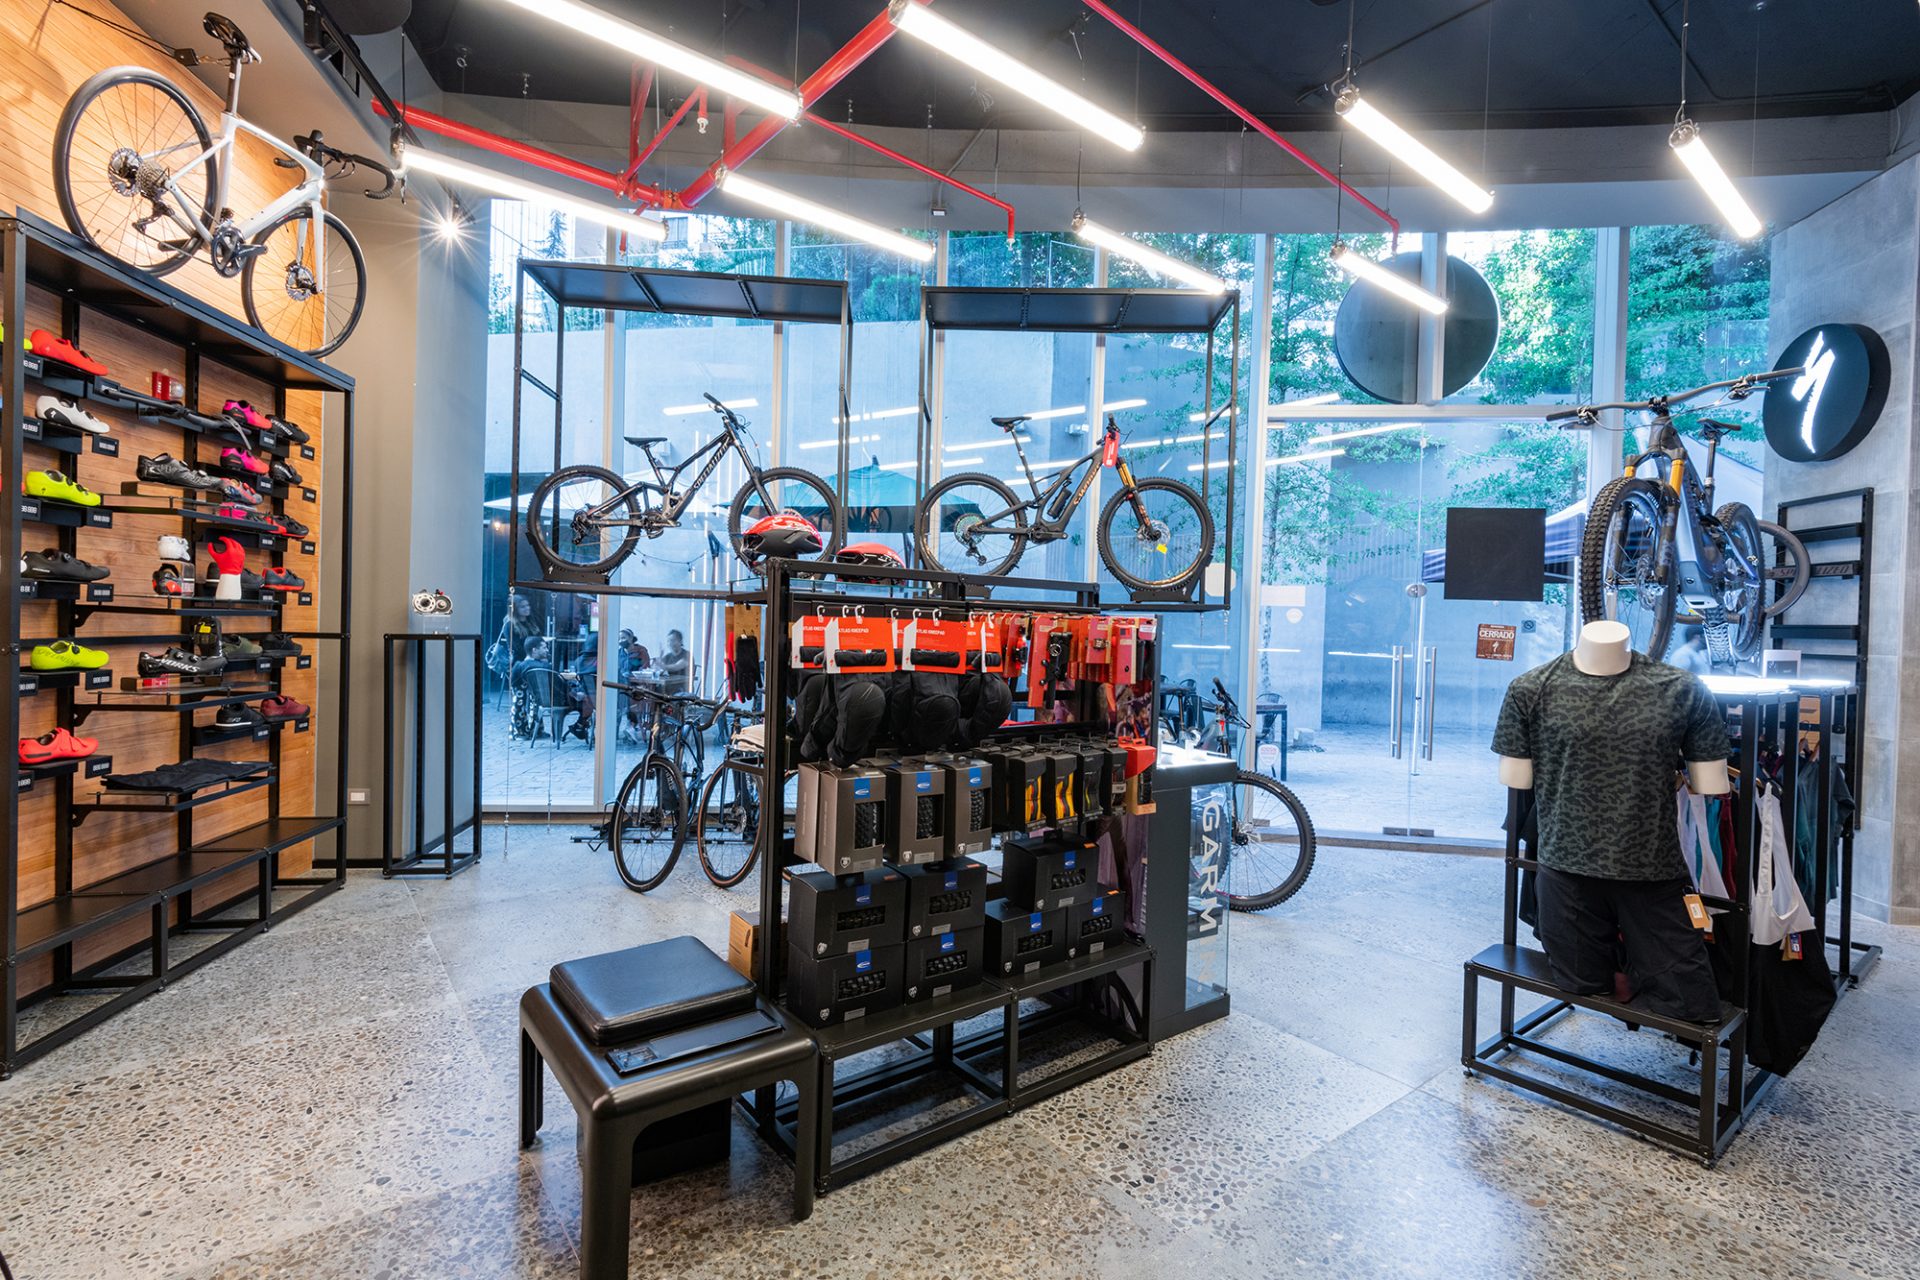 Bike Chile  Tienda de Bicicletas y Servicio Técnico